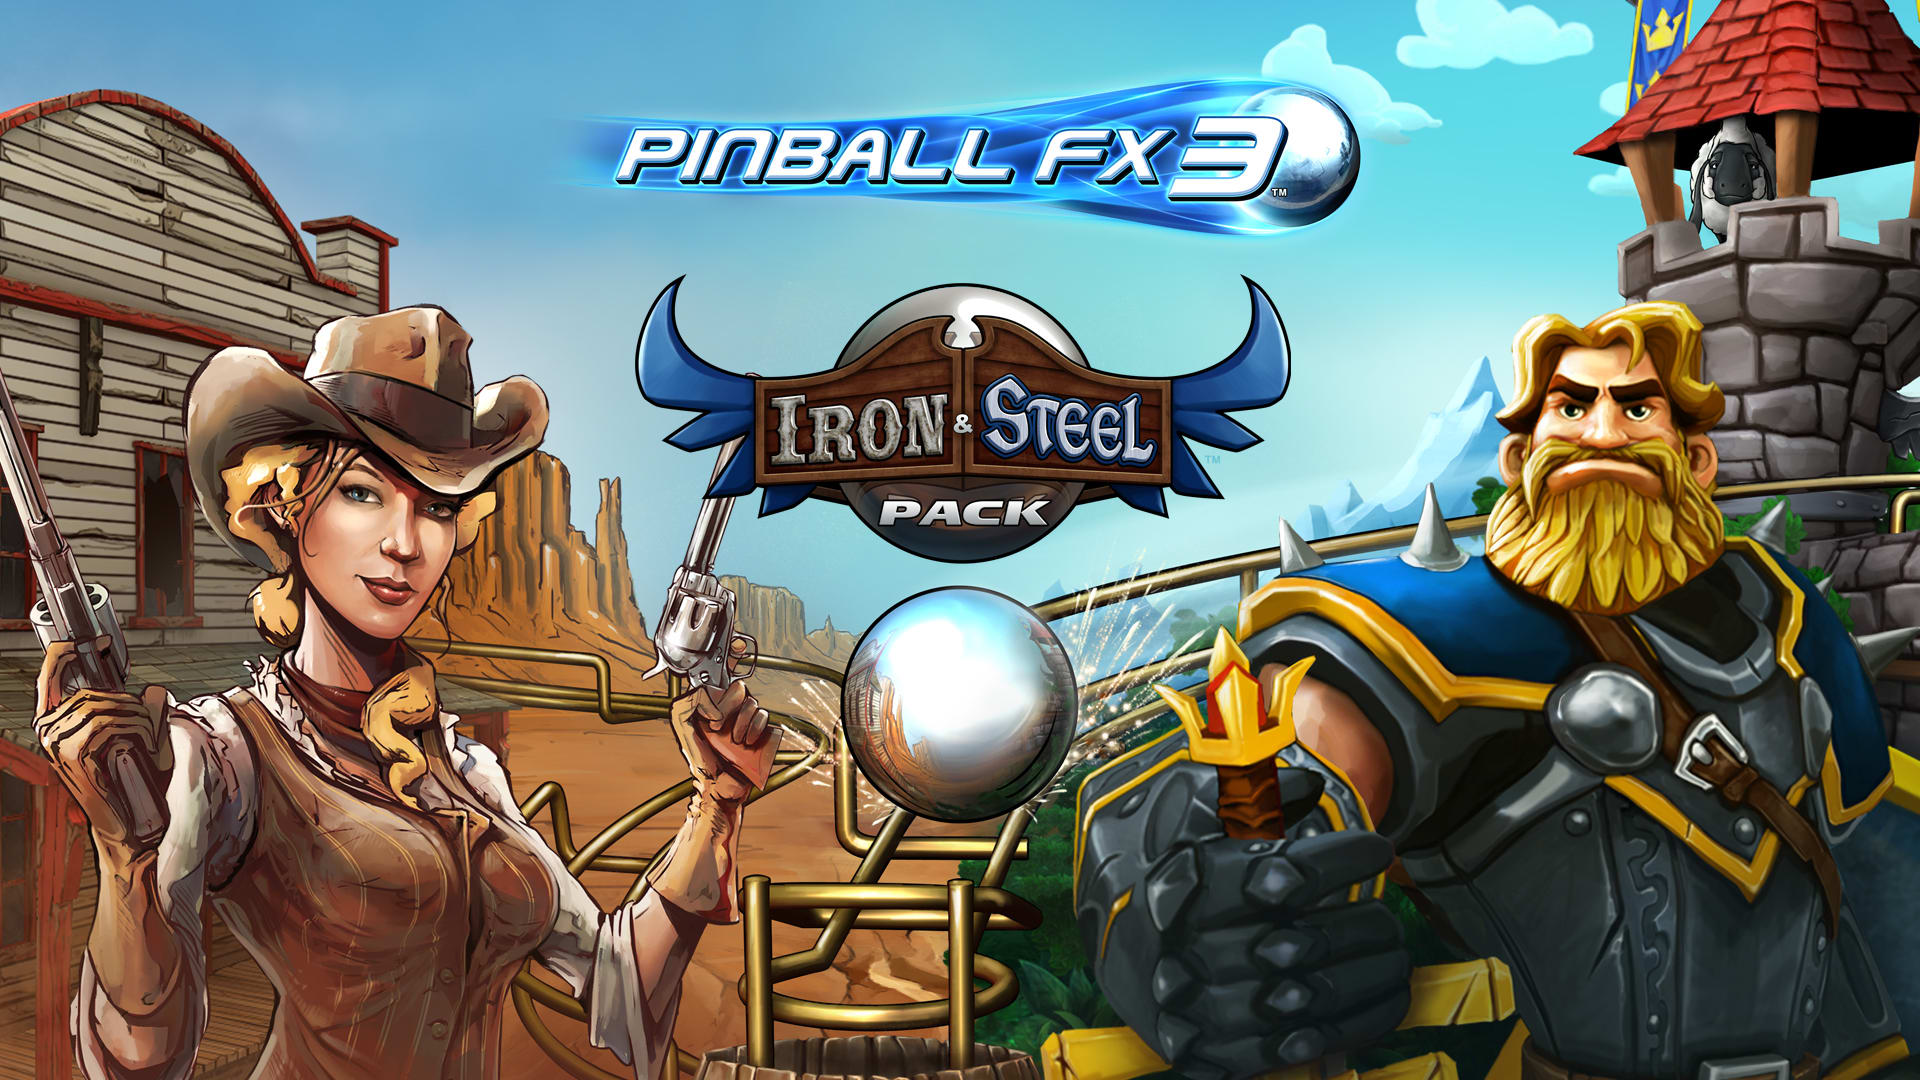 Pinball FX3 - Iron & Steel Pack